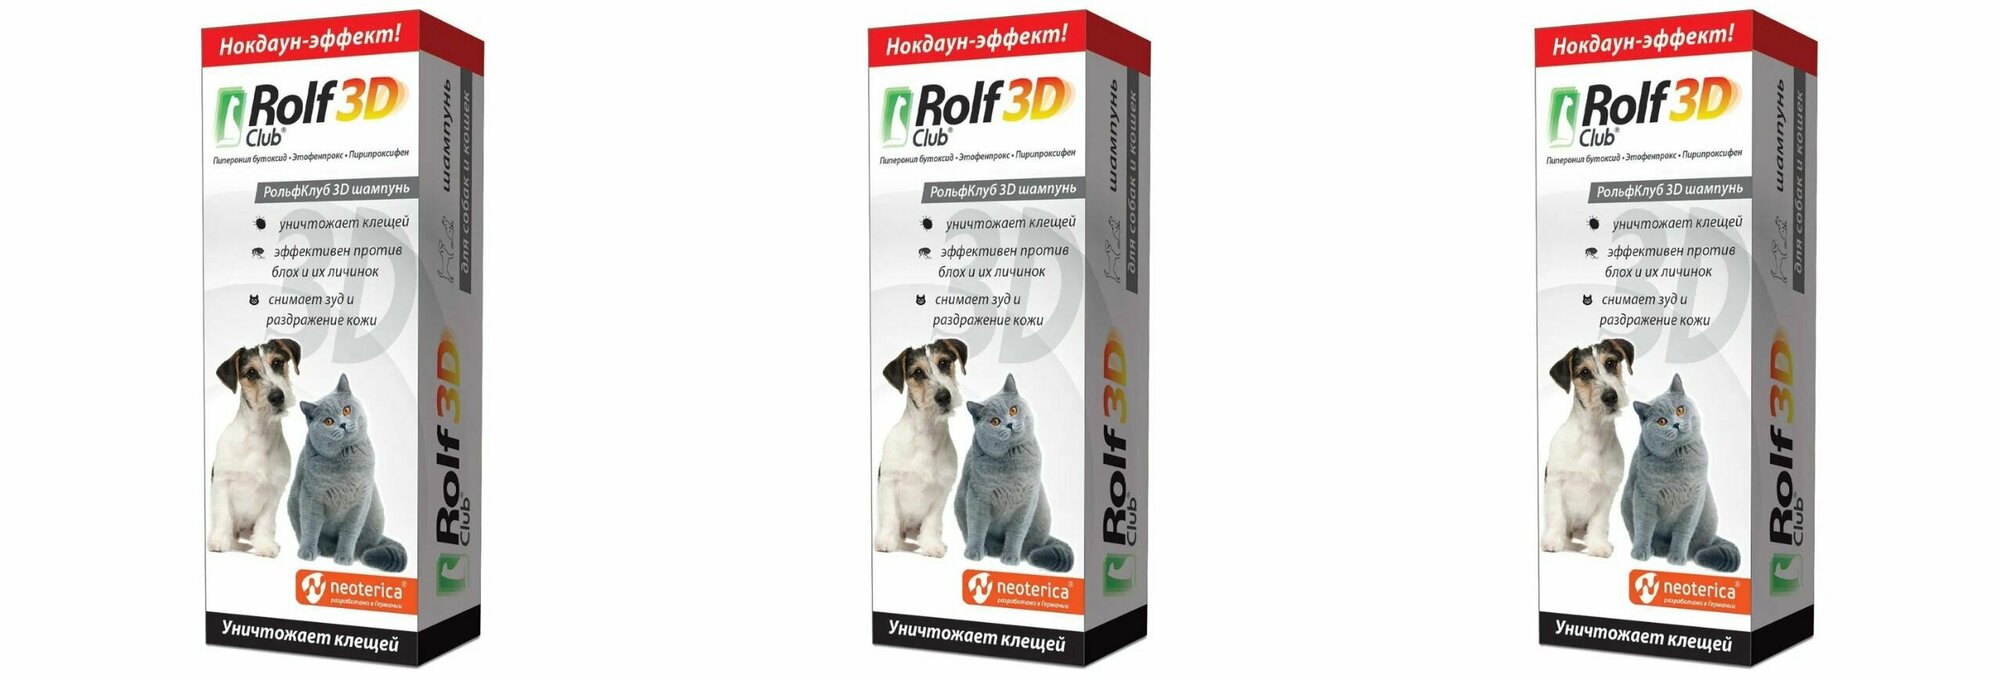 Rolf Club 3D Шампунь для кошек и собак, 200 мл, 3 шт